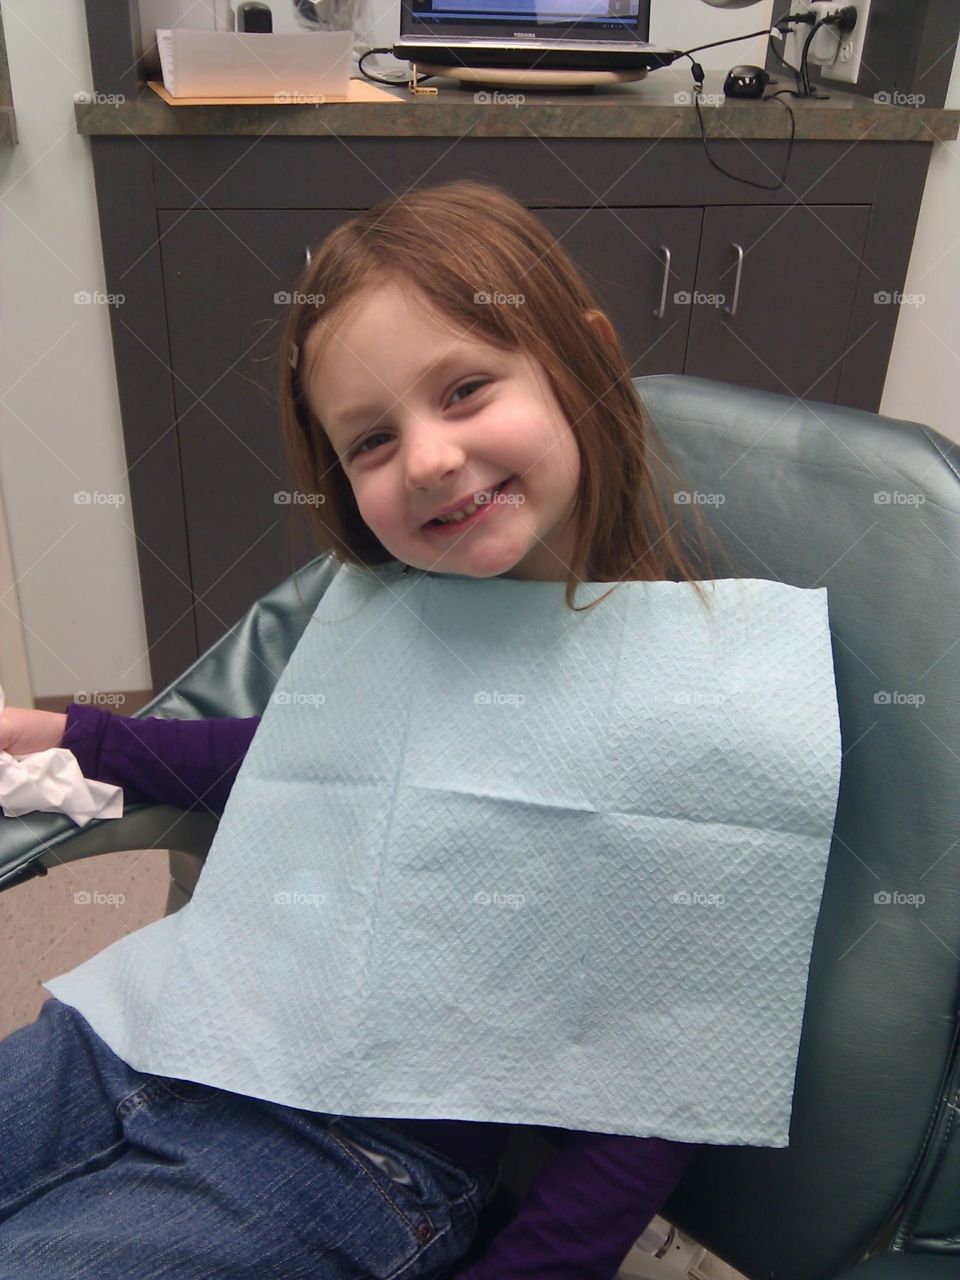 She loves the dentist